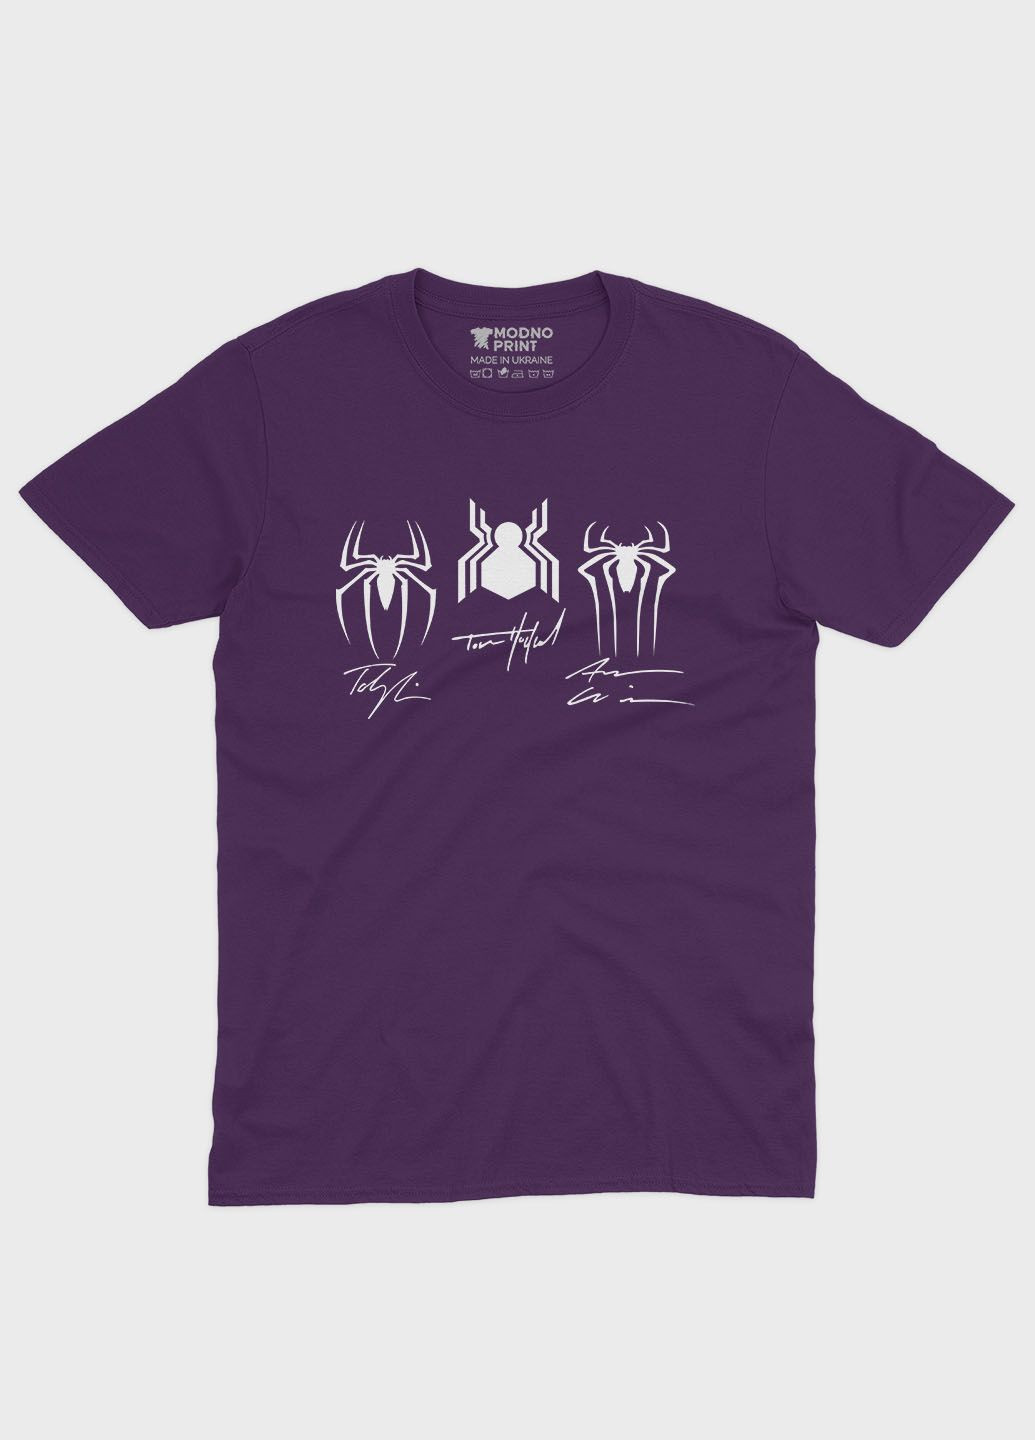 Фіолетова демісезонна футболка для хлопчика з принтом супергероя - людина-павук (ts001-1-dby-006-014-098-b) Modno